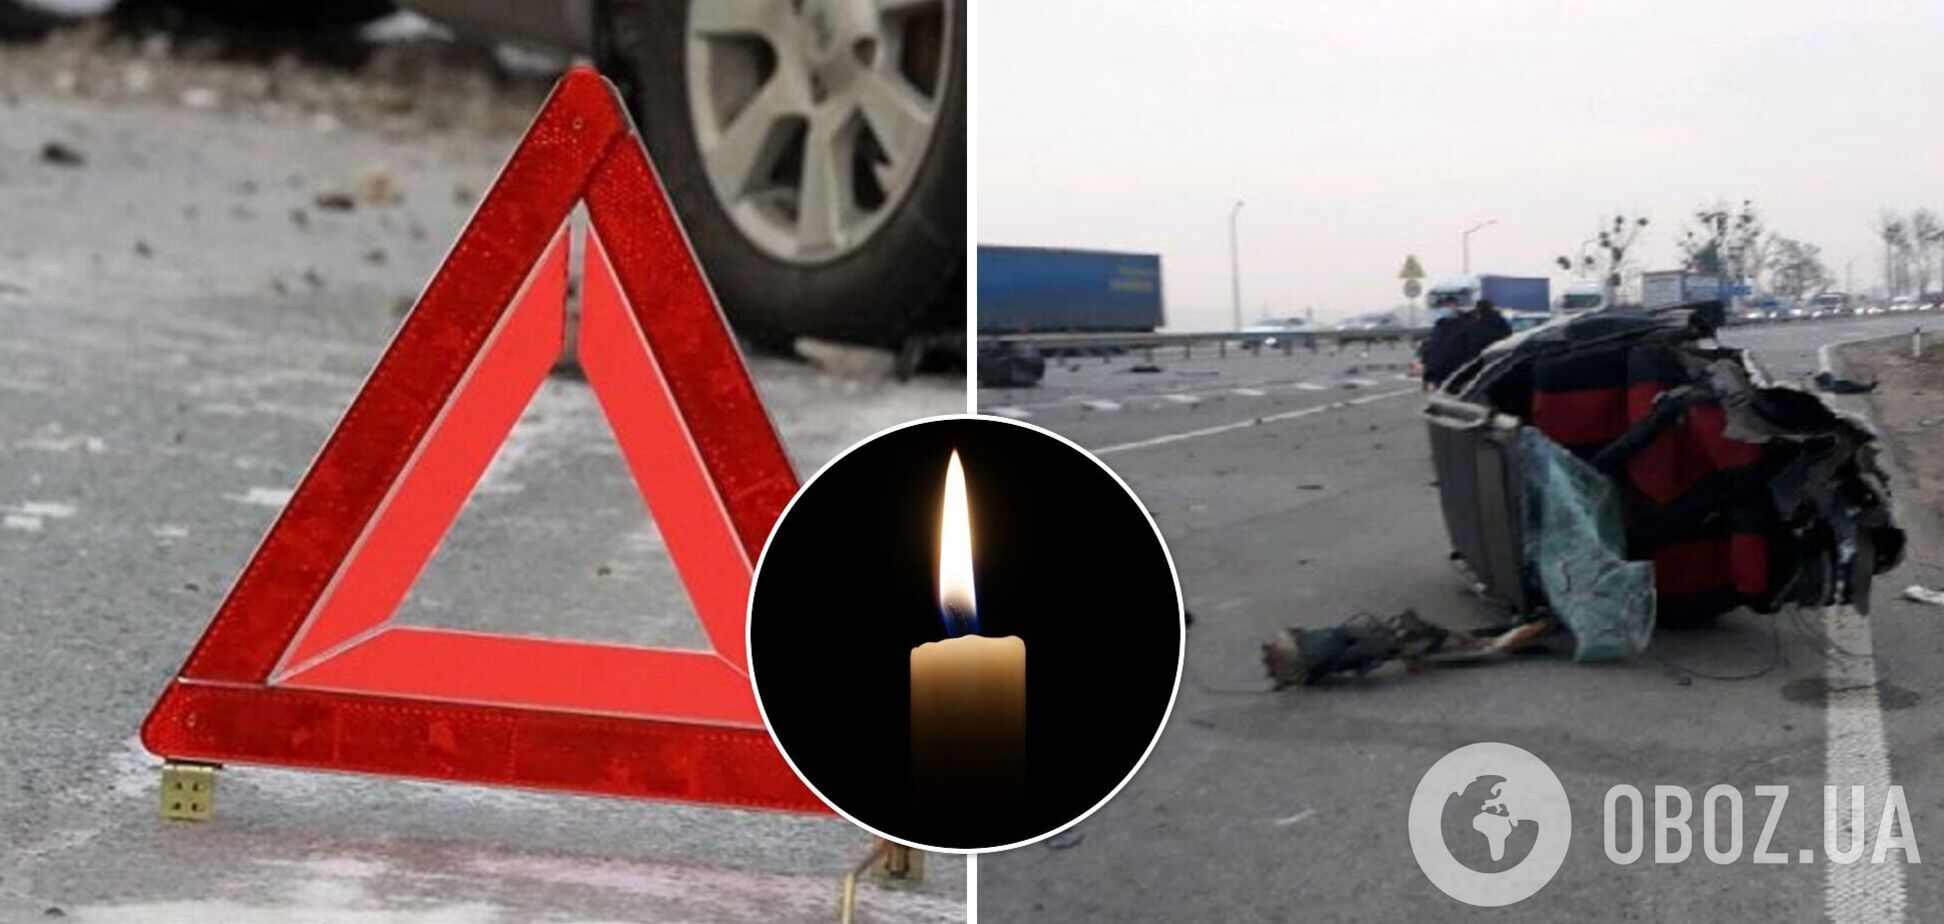 На Львівщині у ДТП загинула 12-річна дівчинка, ще двоє людей постраждали. Фото і відео